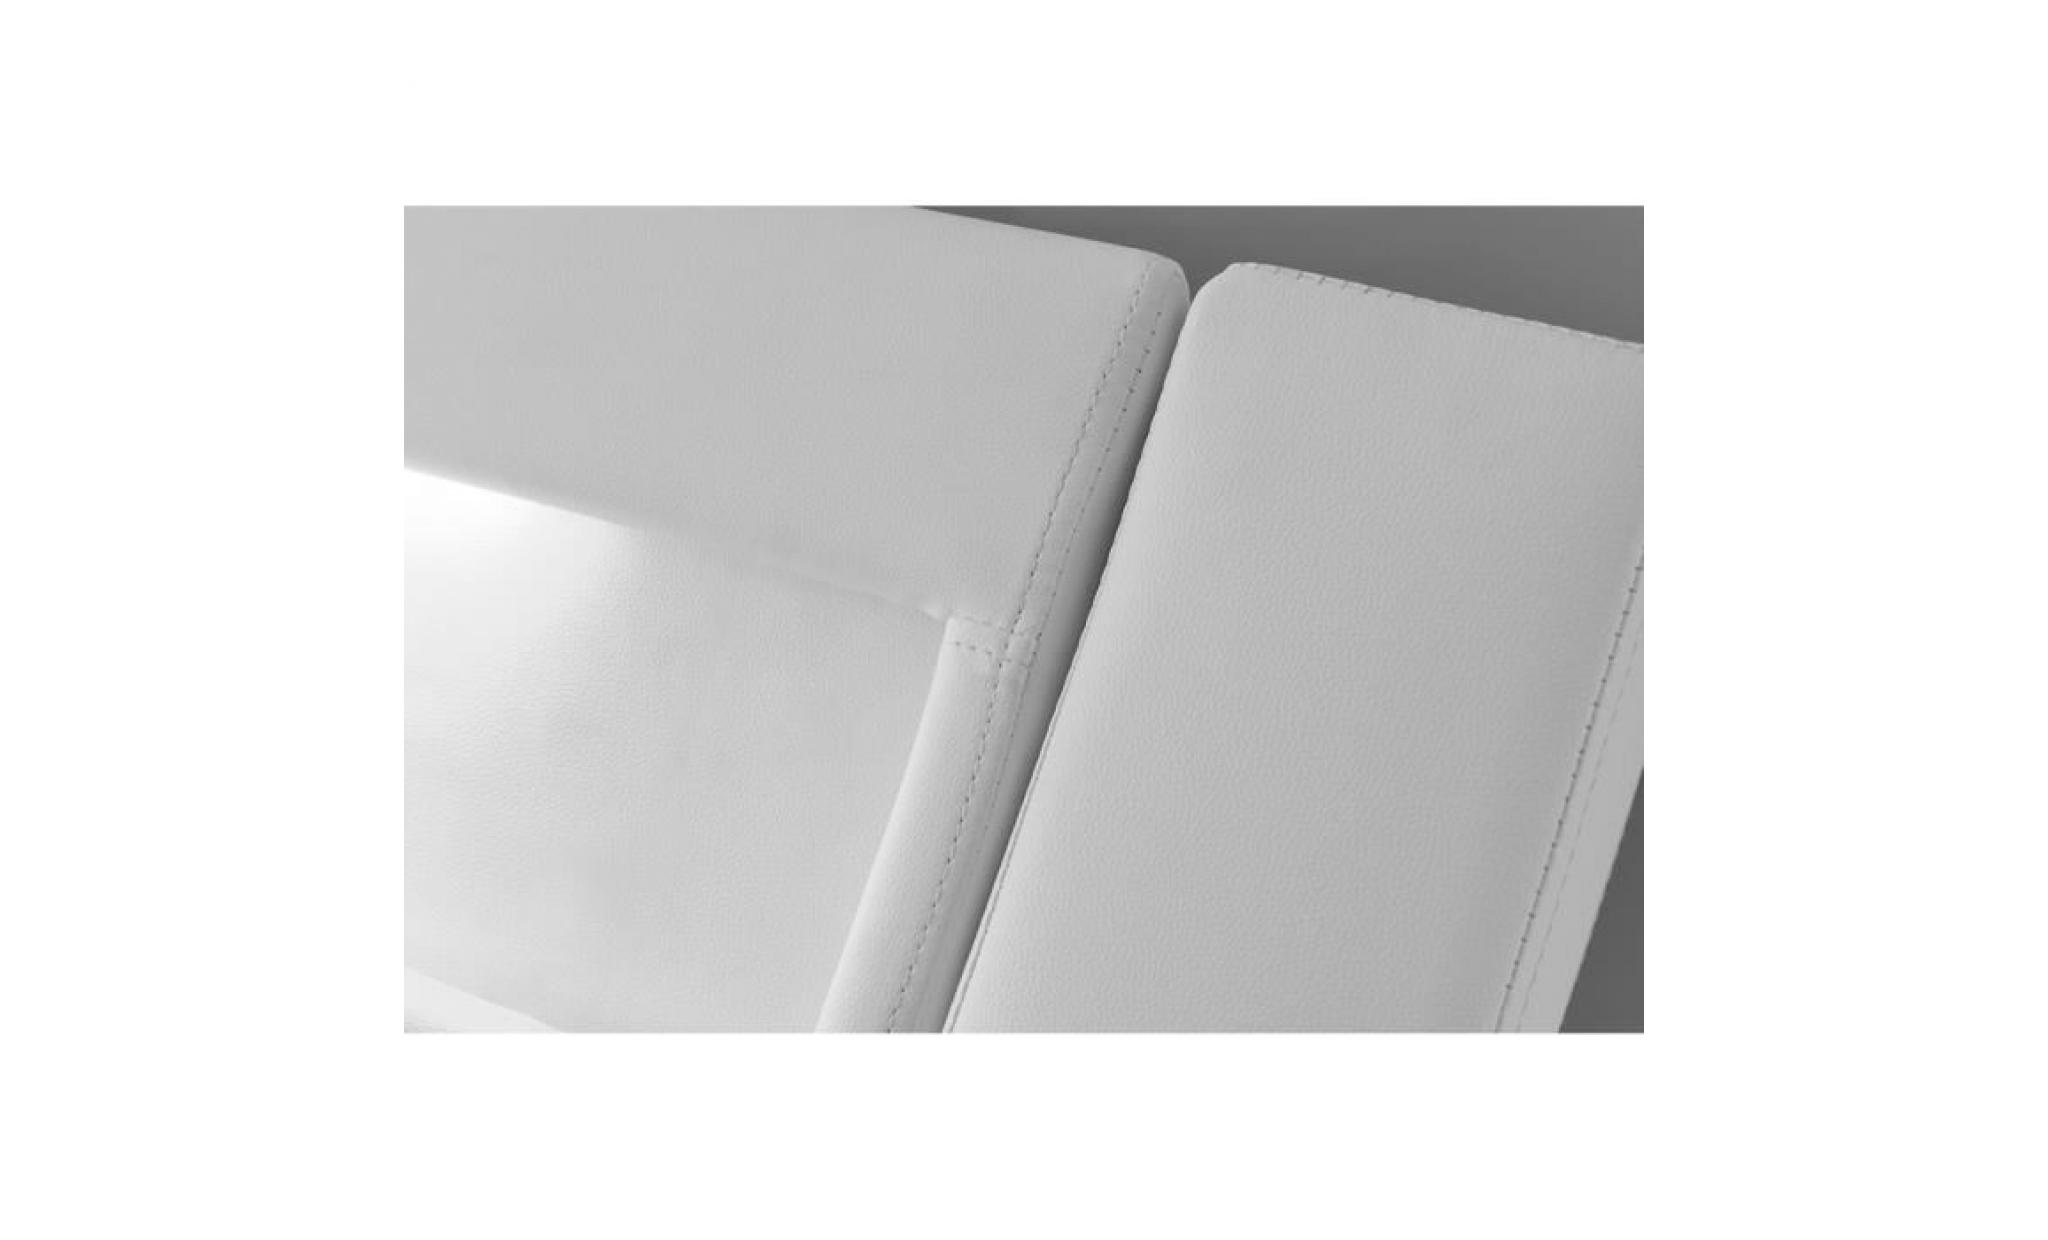 lit paddington   cadre de lit en simili blanc avec led intégrées   140x190cm pas cher